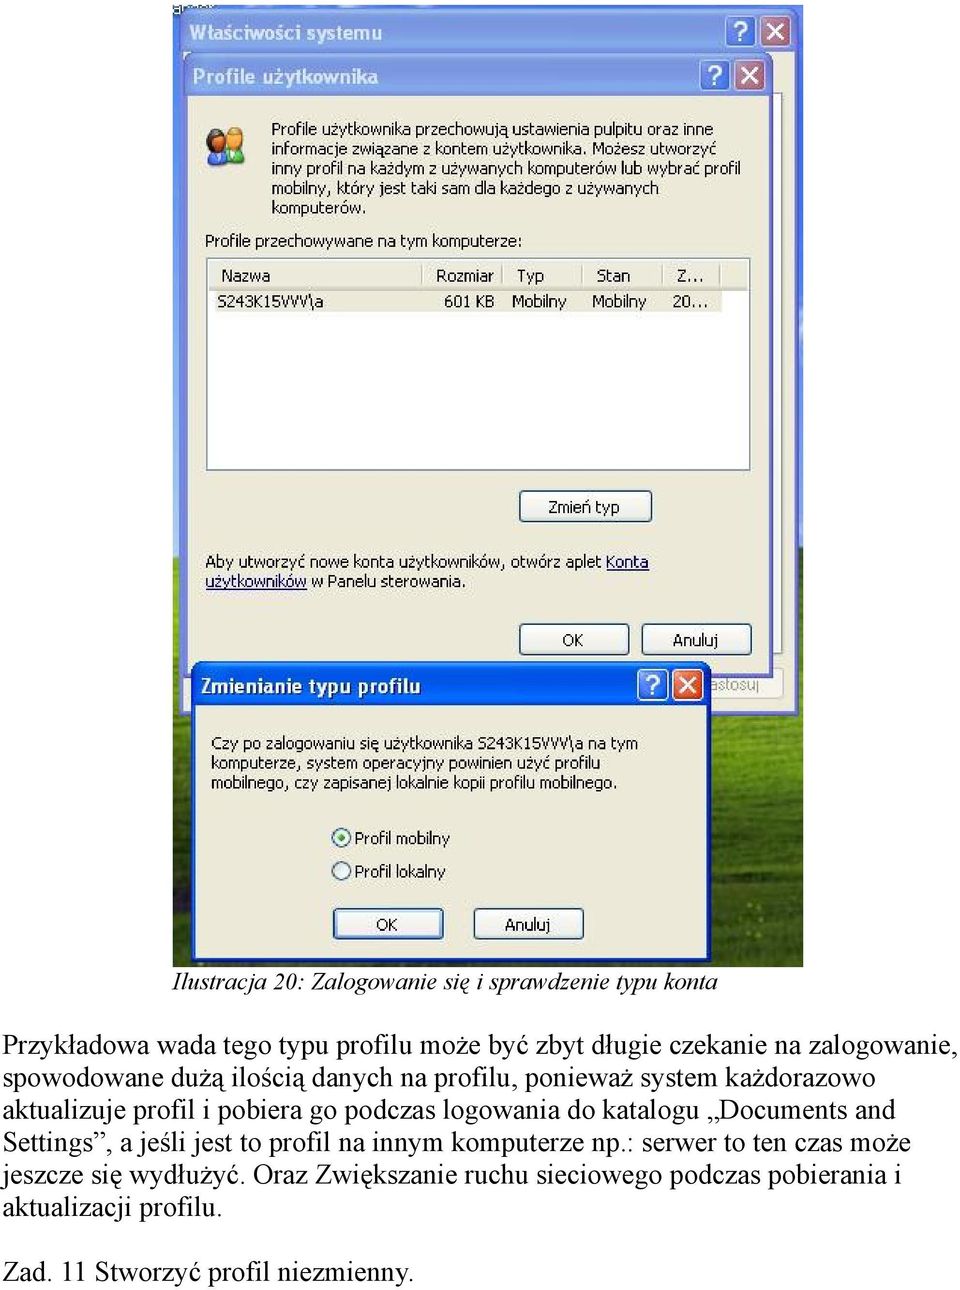 logowania do katalogu Documents and Settings, a jeśli jest to profil na innym komputerze np.